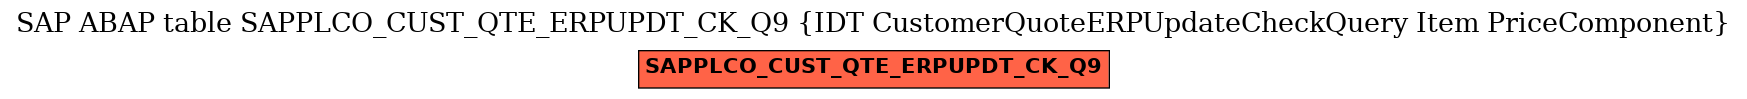 E-R Diagram for table SAPPLCO_CUST_QTE_ERPUPDT_CK_Q9 (IDT CustomerQuoteERPUpdateCheckQuery Item PriceComponent)